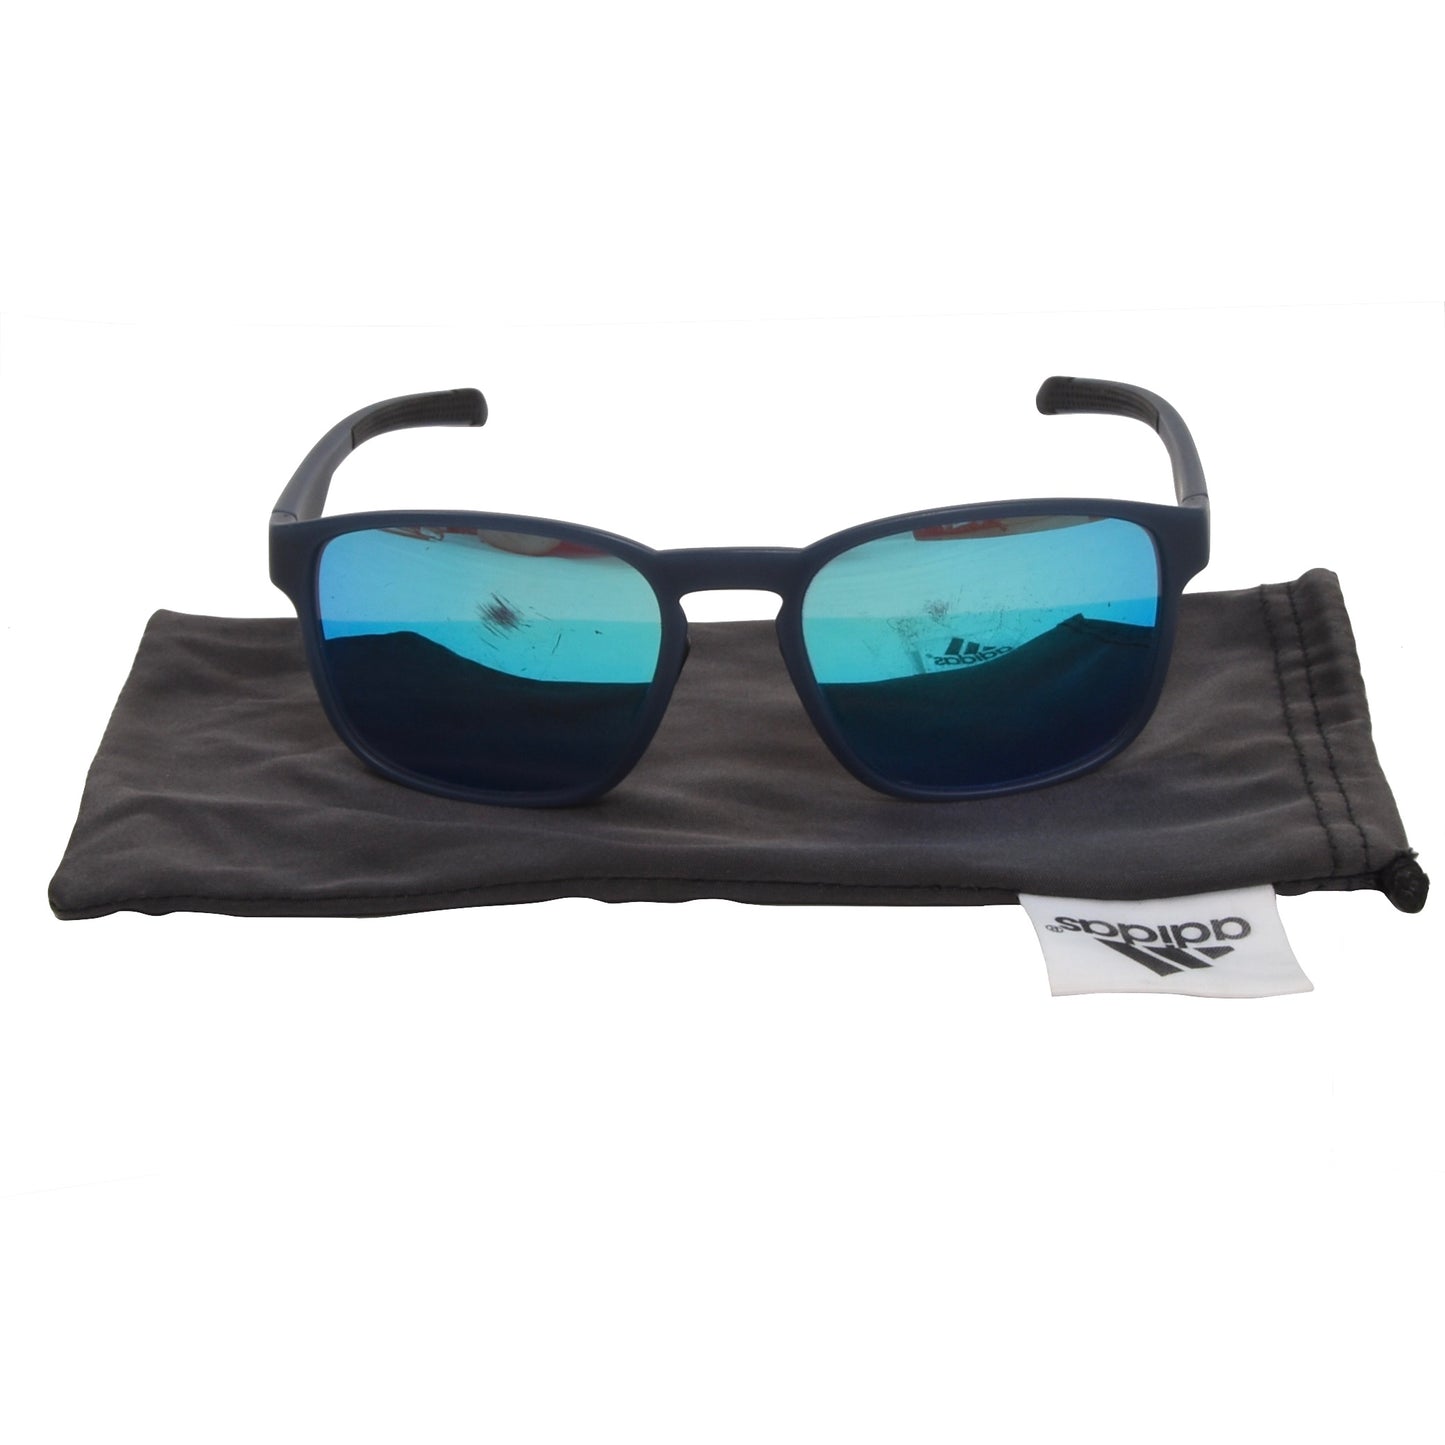 Adidas Protean ad32 6900 Sonnenbrille - Blau